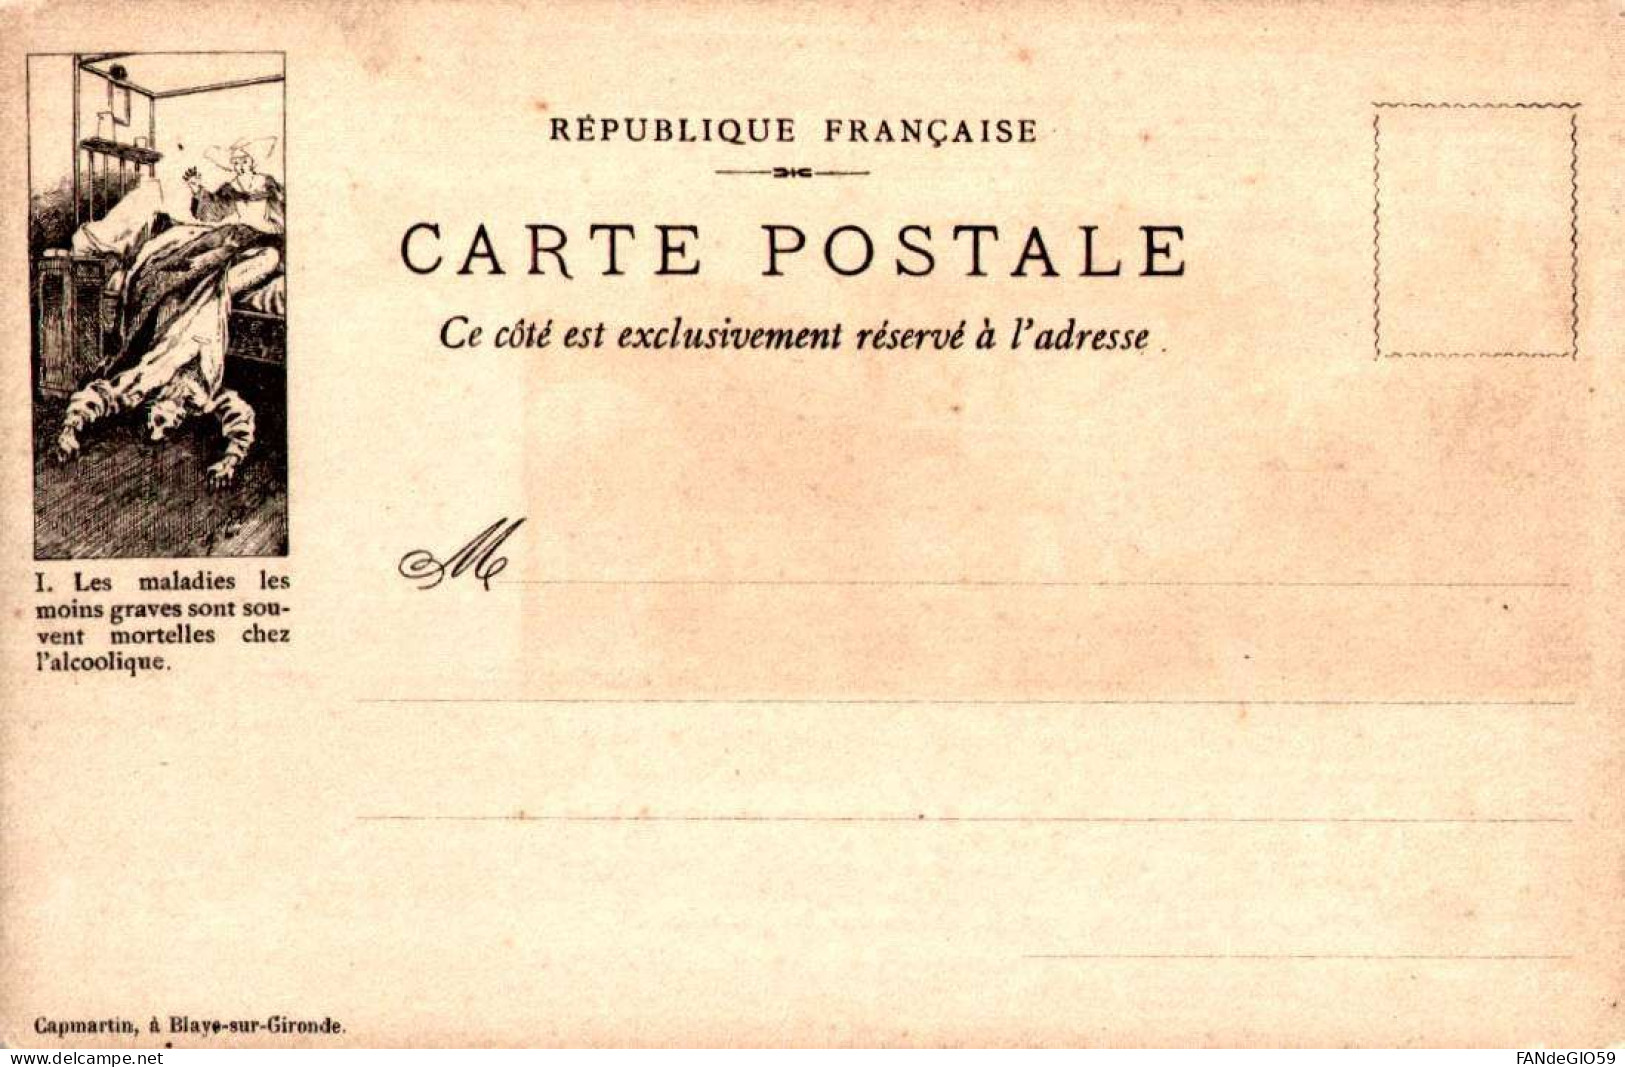 CHATEAU   CARTE POSTALE  / CAPMARTIN  /  CHATEAU DE  VIZILLE   /// 30 - Châteaux